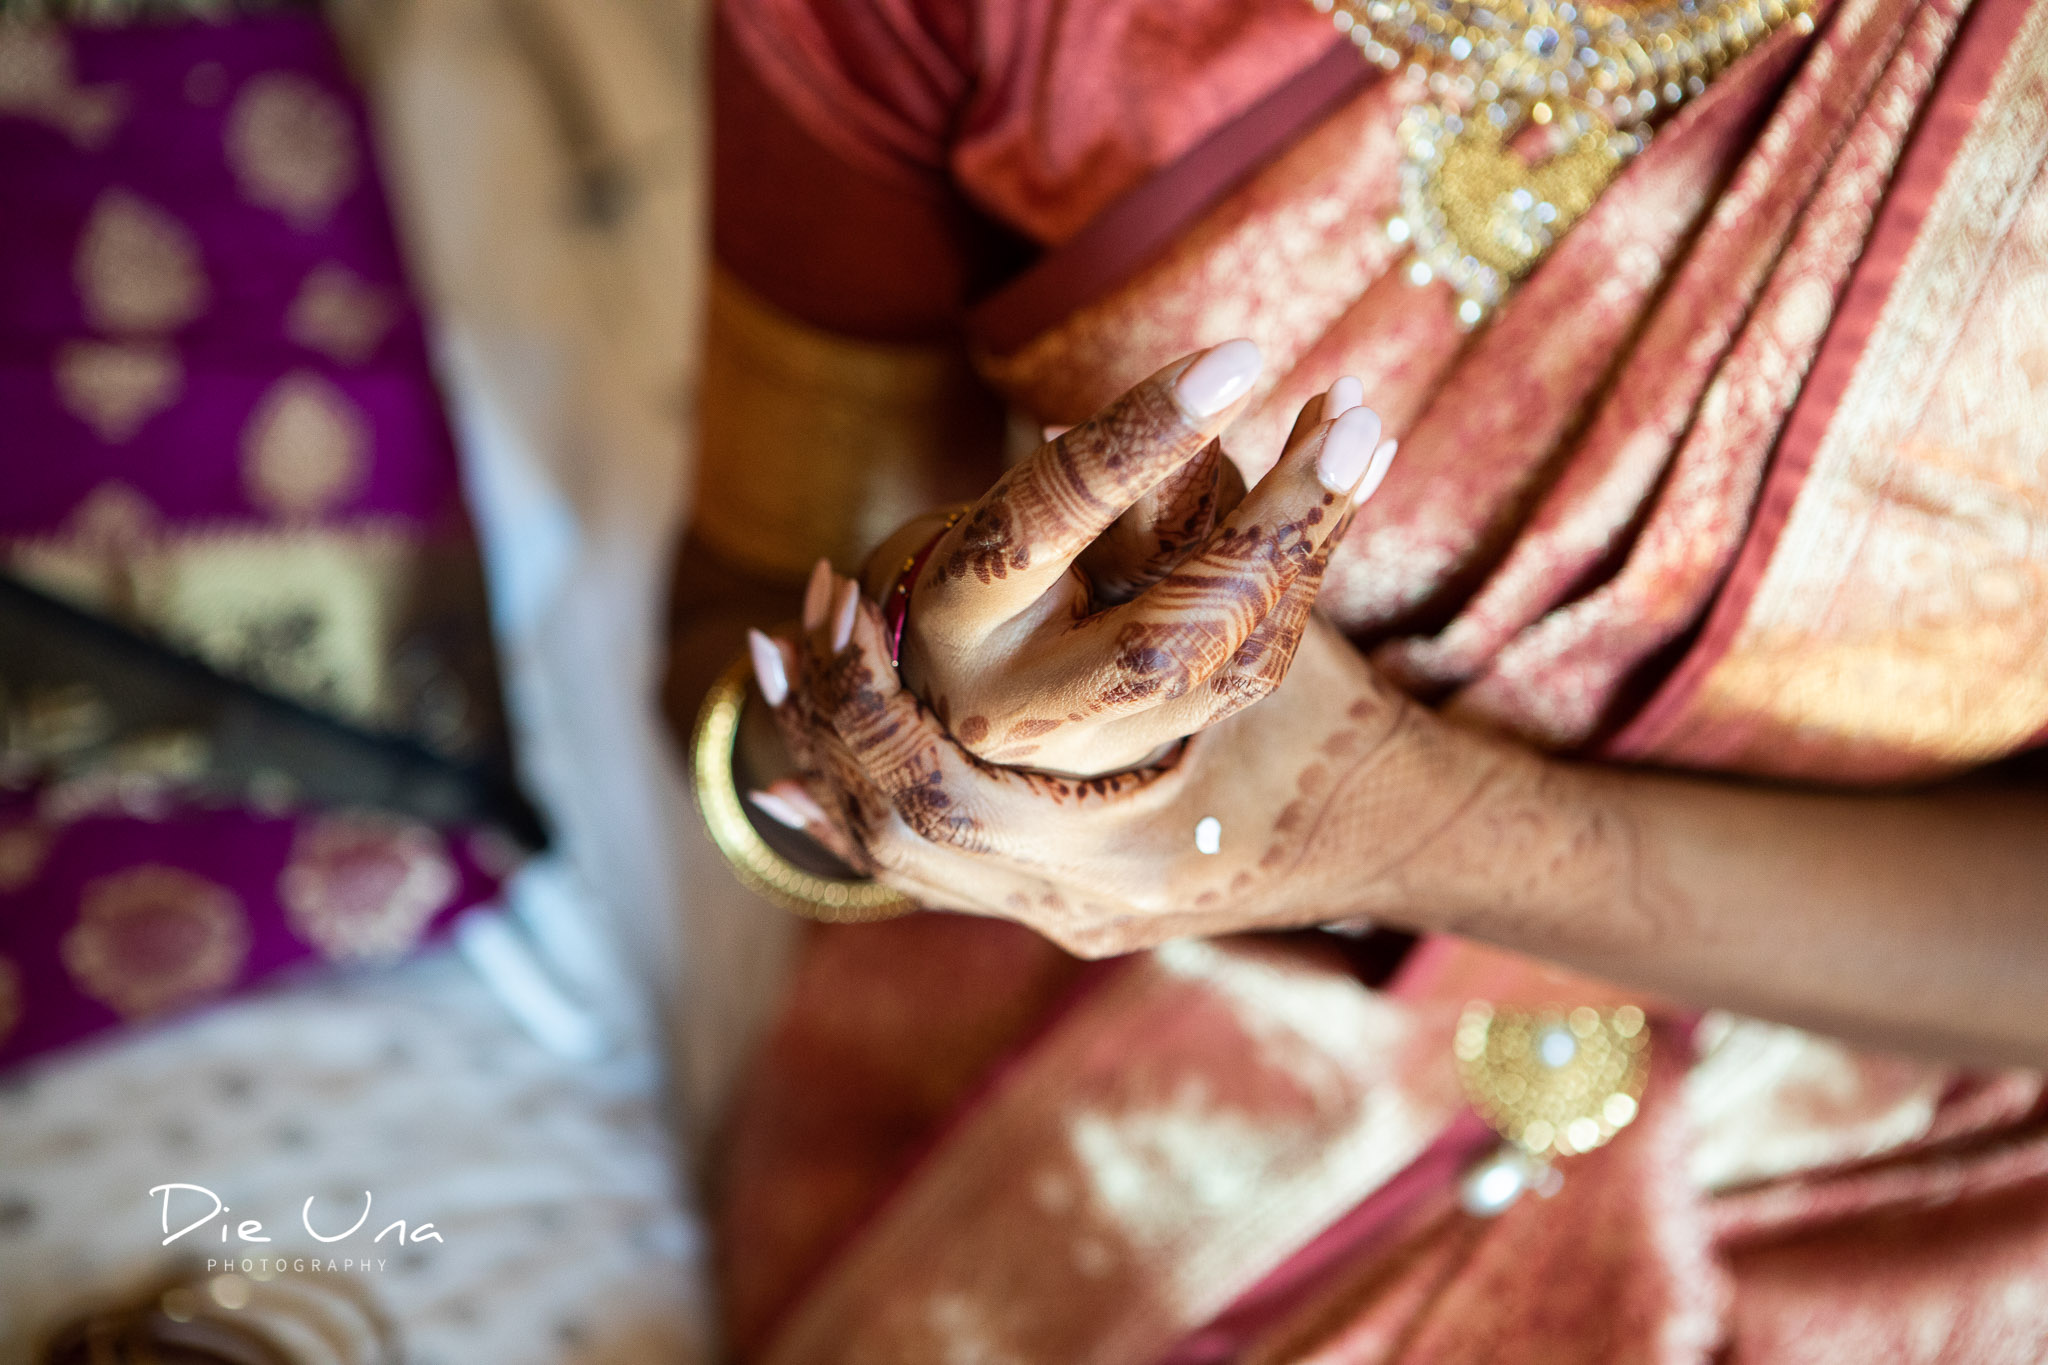 bride putting on wedding bracelets while wearing saree.jpg